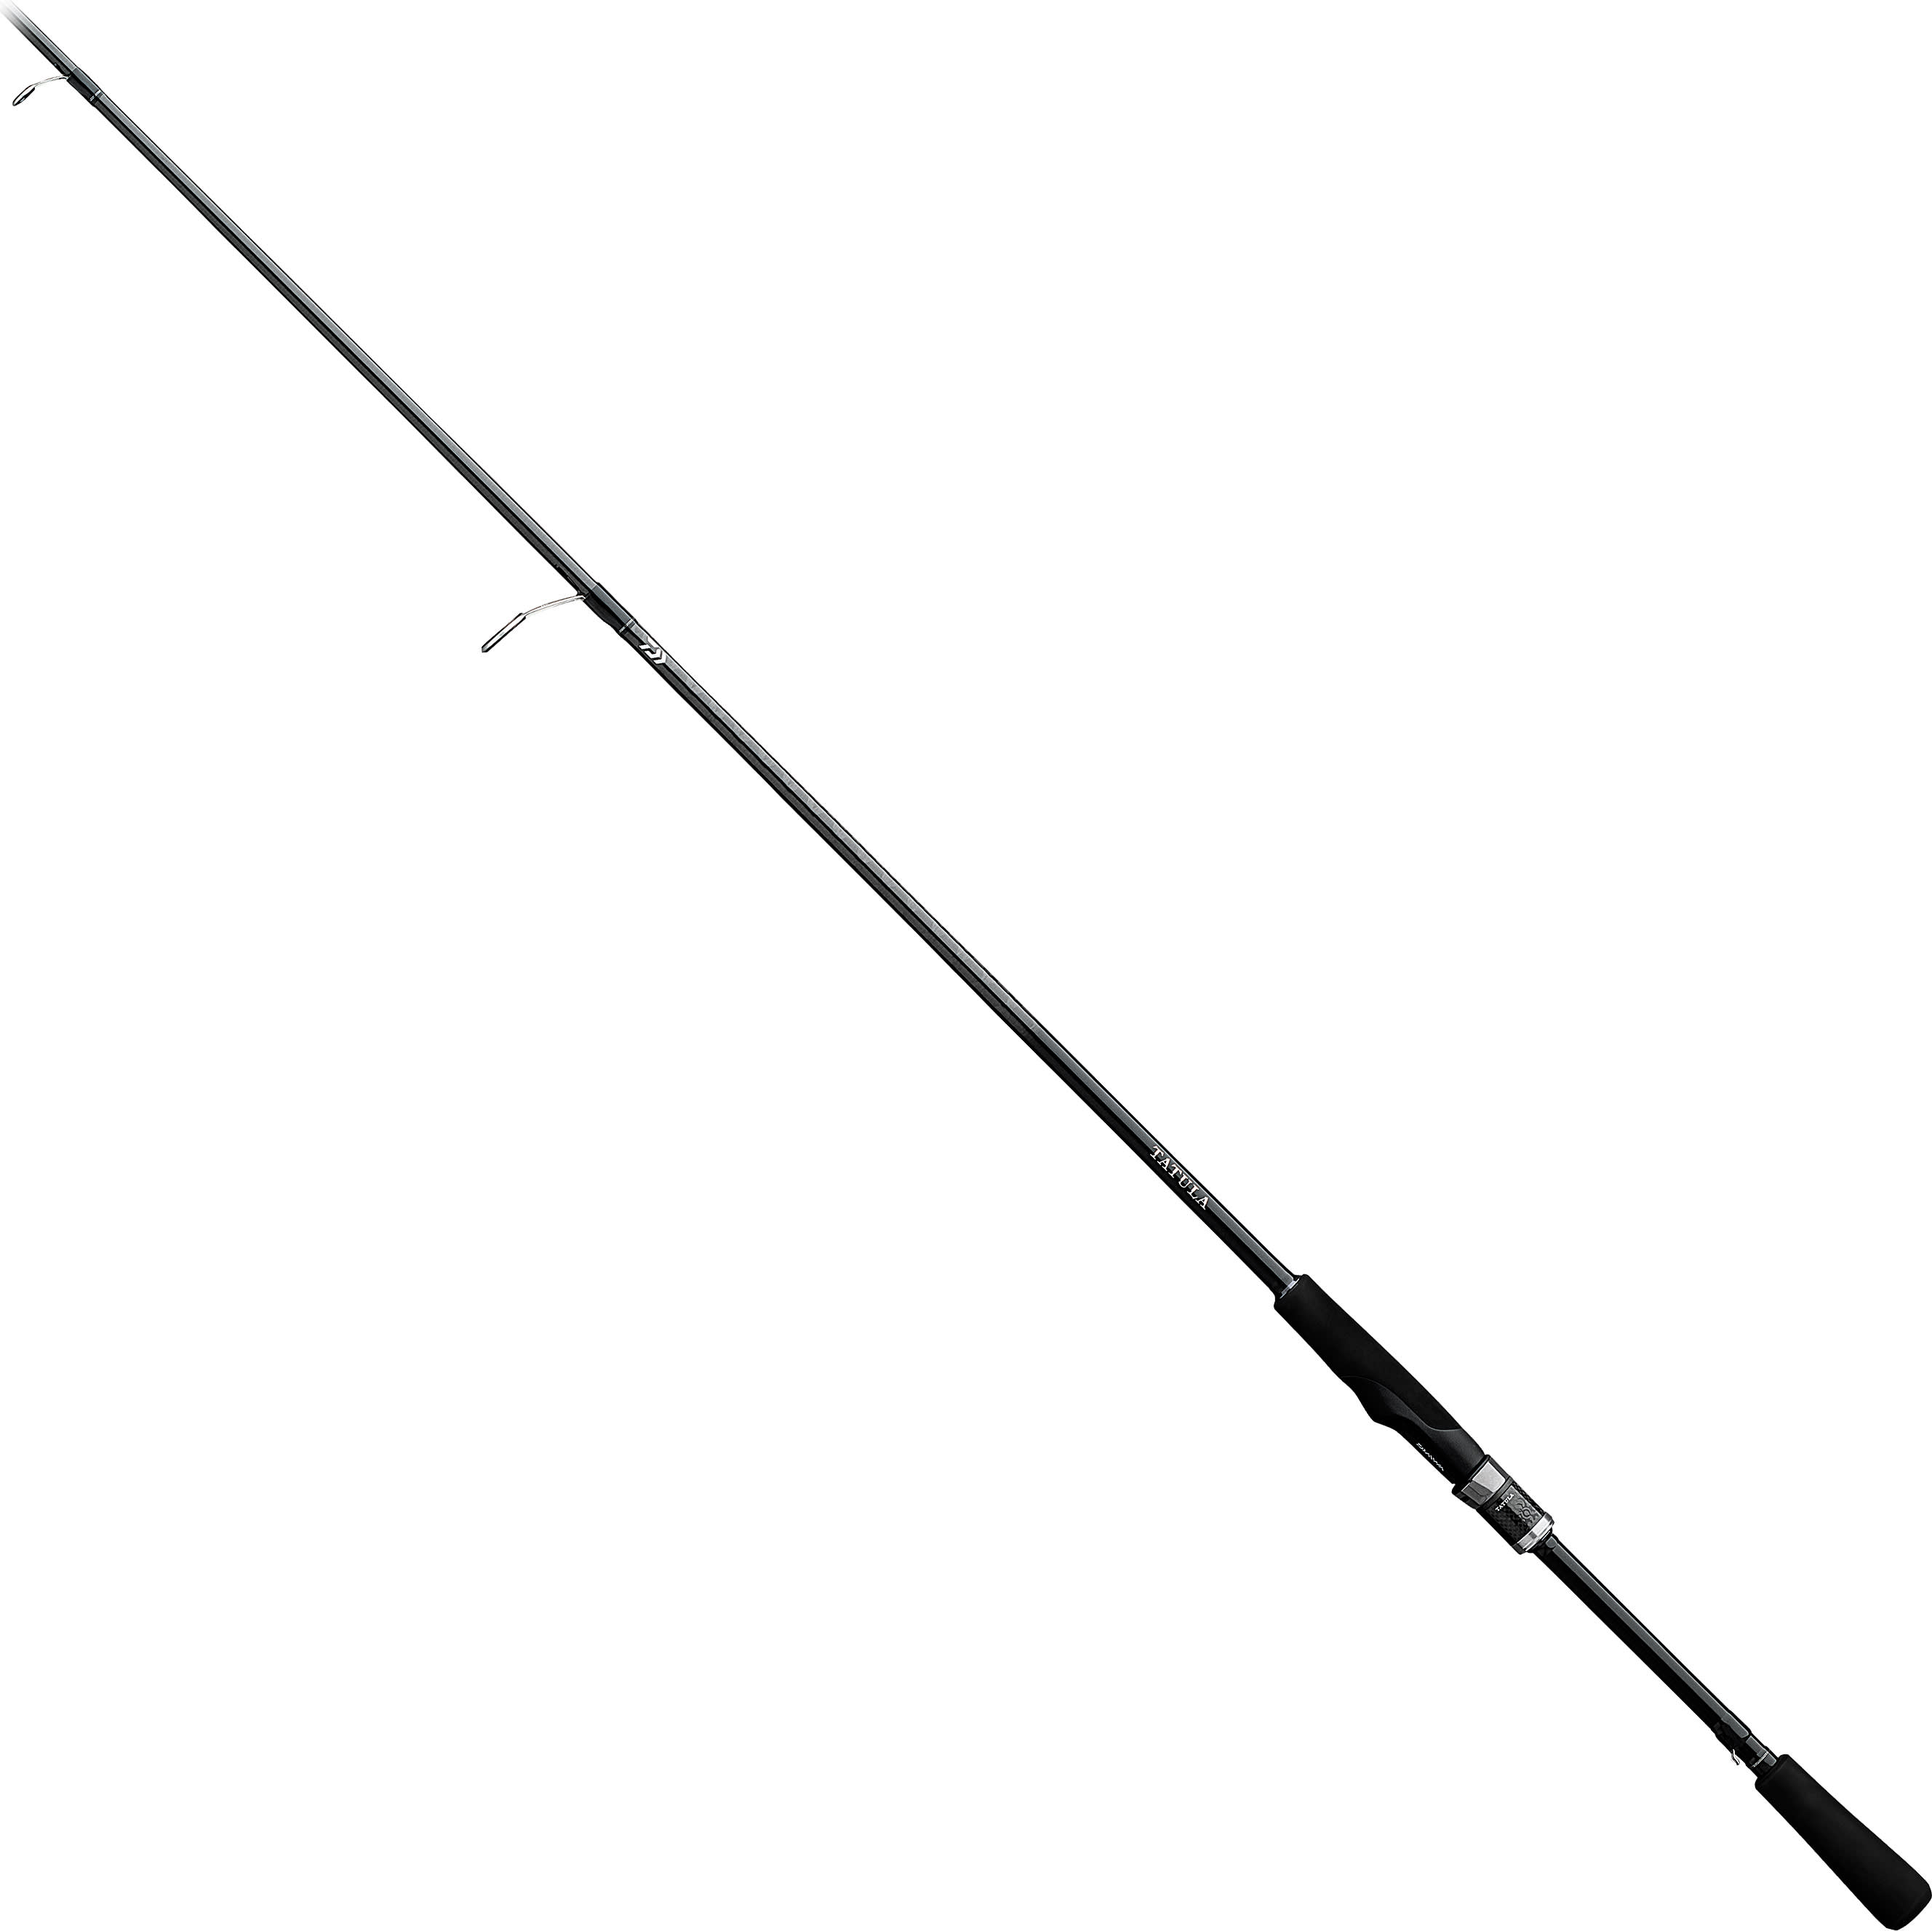 Berkley 1429022 BSLR661M 6 ft 6 inch Spinning Lightning Rod